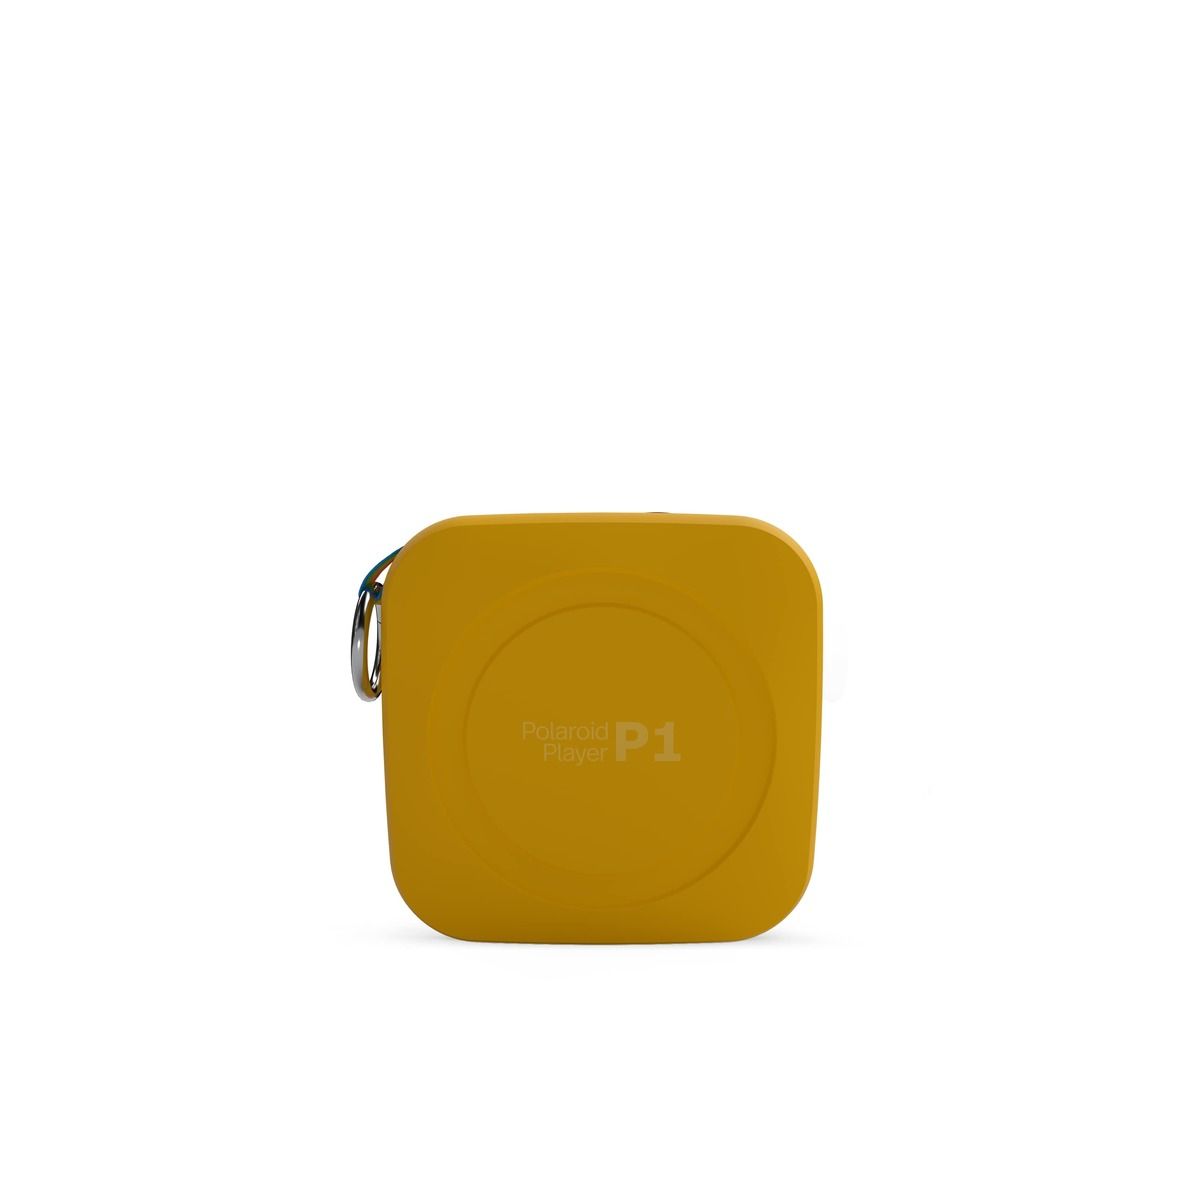 Polaroid P1 Music Player - Gelb / Weiß